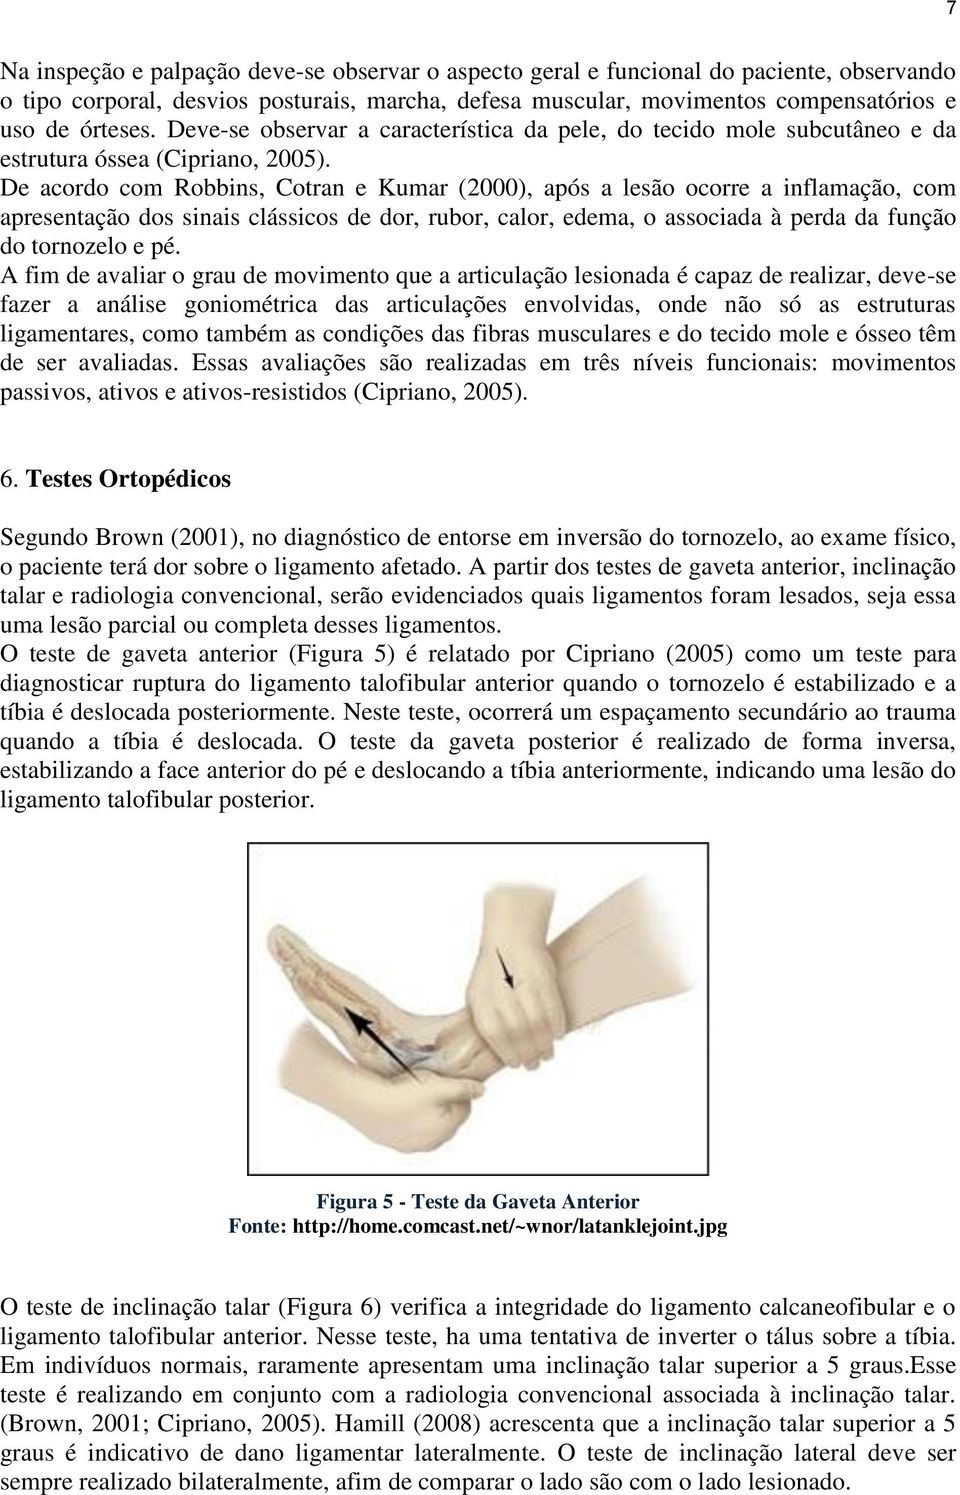 De acordo com Robbins, Cotran e Kumar (2000), após a lesão ocorre a inflamação, com apresentação dos sinais clássicos de dor, rubor, calor, edema, o associada à perda da função do tornozelo e pé.